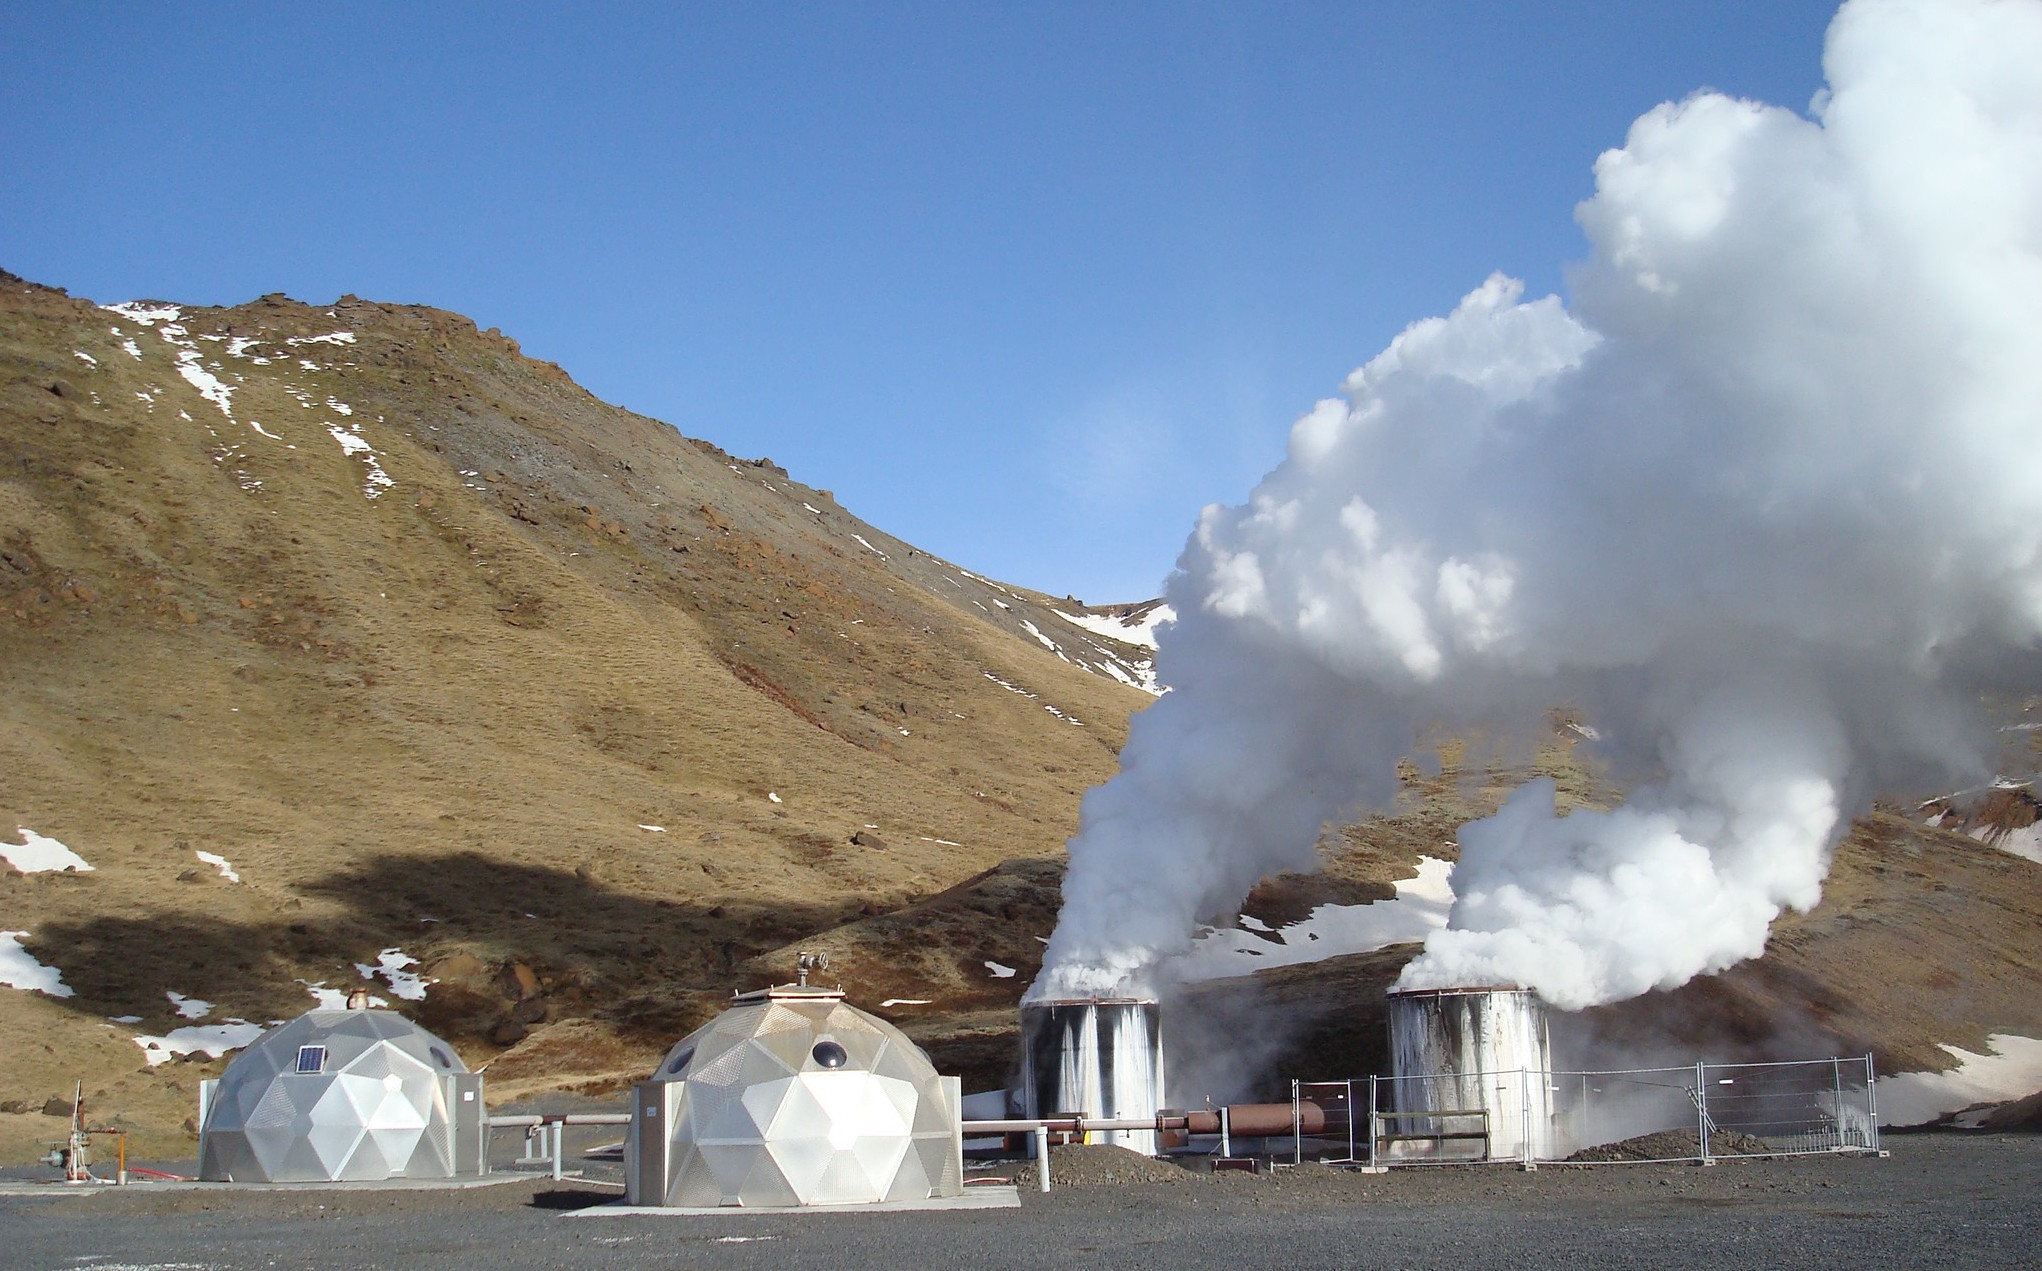 Geothermal energy. ГЕОТЭС В Исландии. Геотермальная энергия в Исландии. Геотермальные станции с гейзерами. Геотермальная станция Hellisheidi в Исландии.